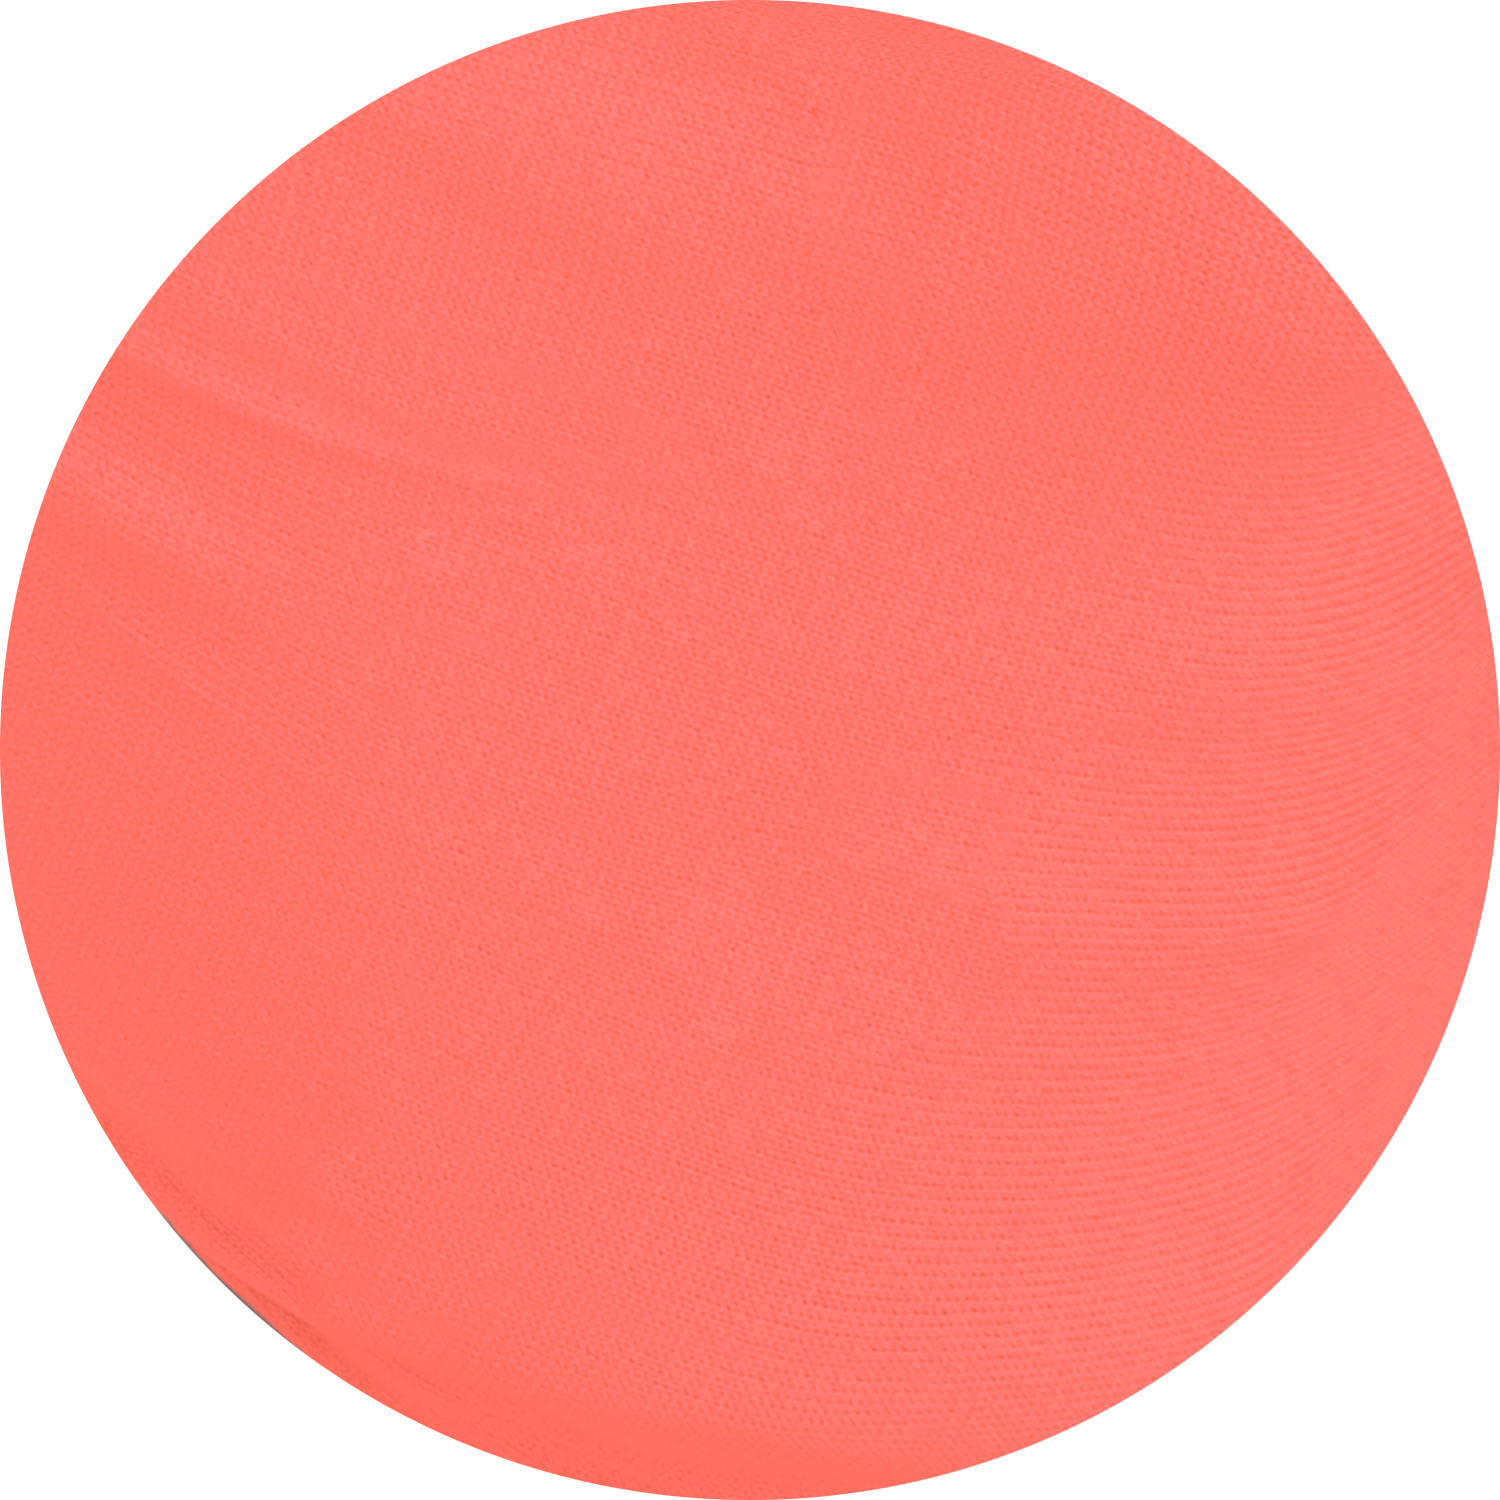 Herbruikbare wasbare Mondmasker Mondkapje neon oranje NIET MEDISCH met Oeko-Tex standard 100 label